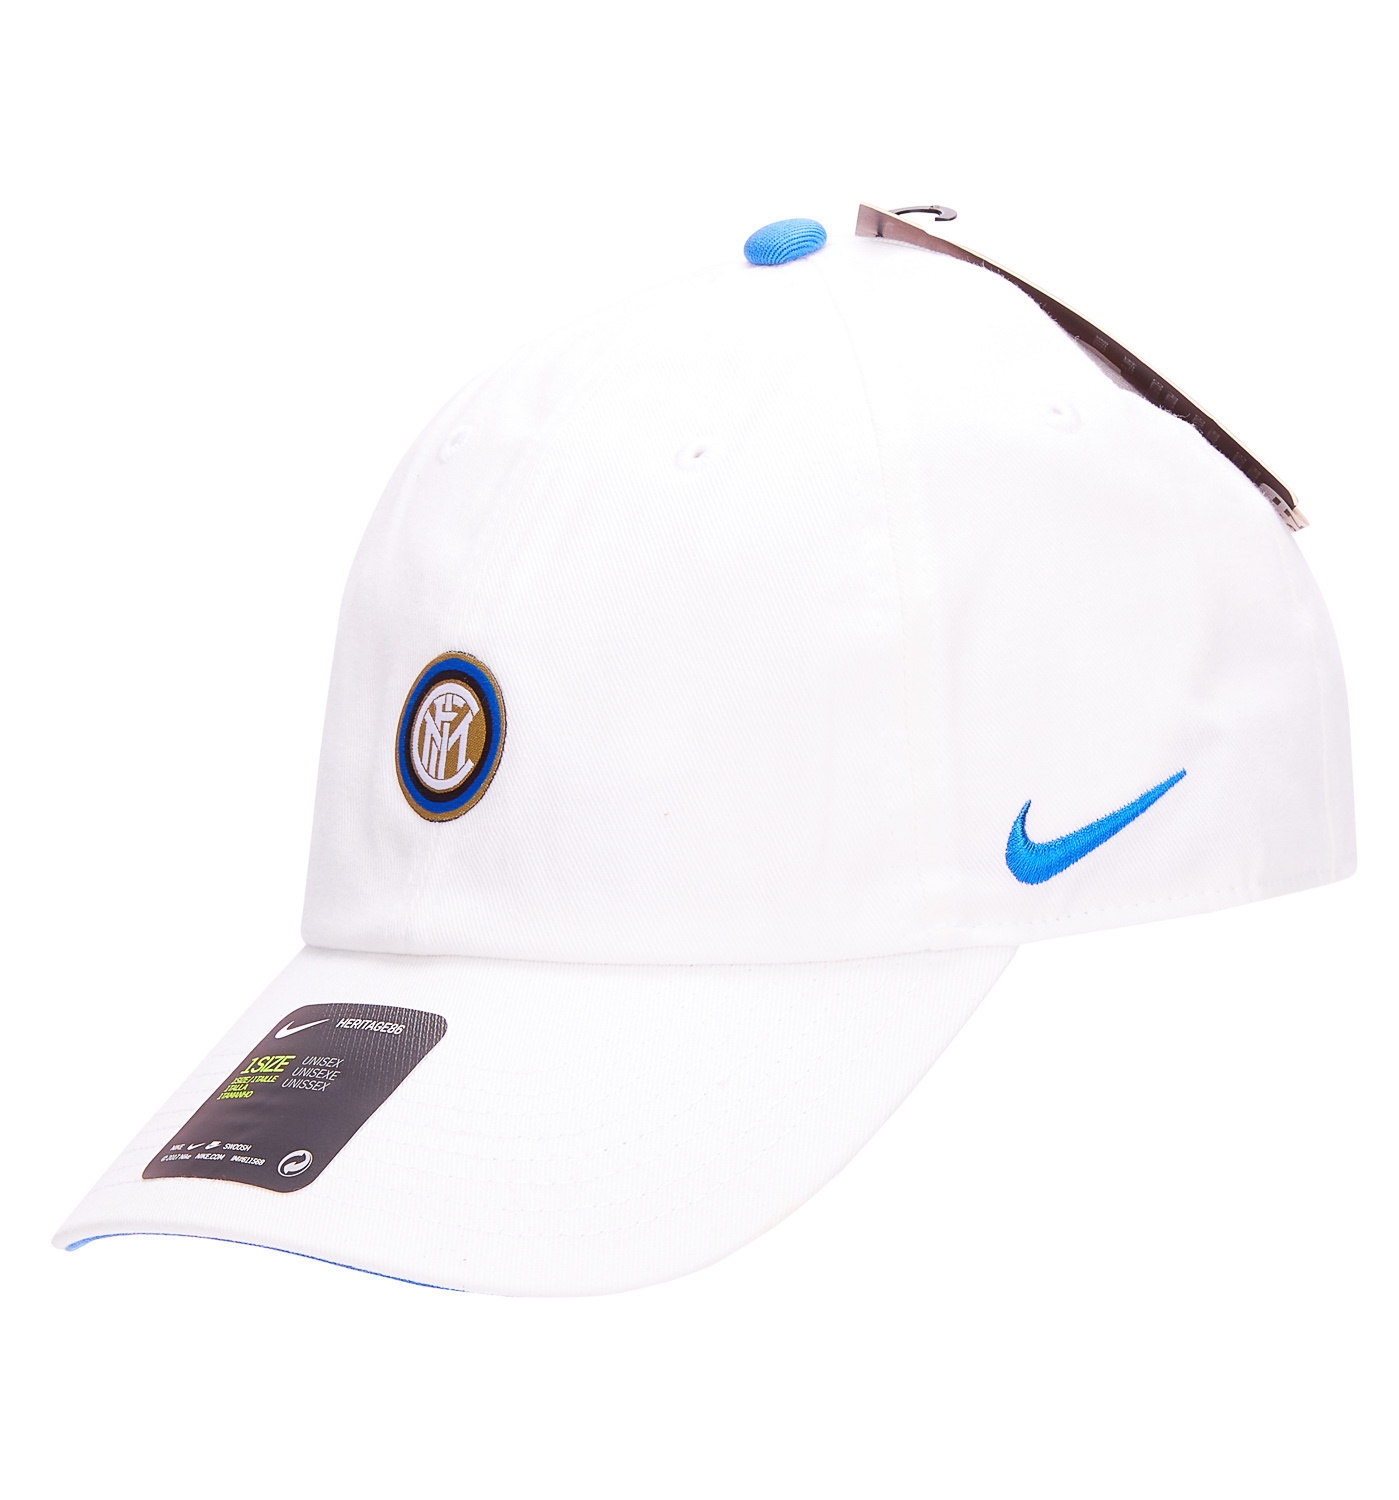 Tussendoortje hoek Petulance 2019-20 Inter Milan Nike Cap - NEW